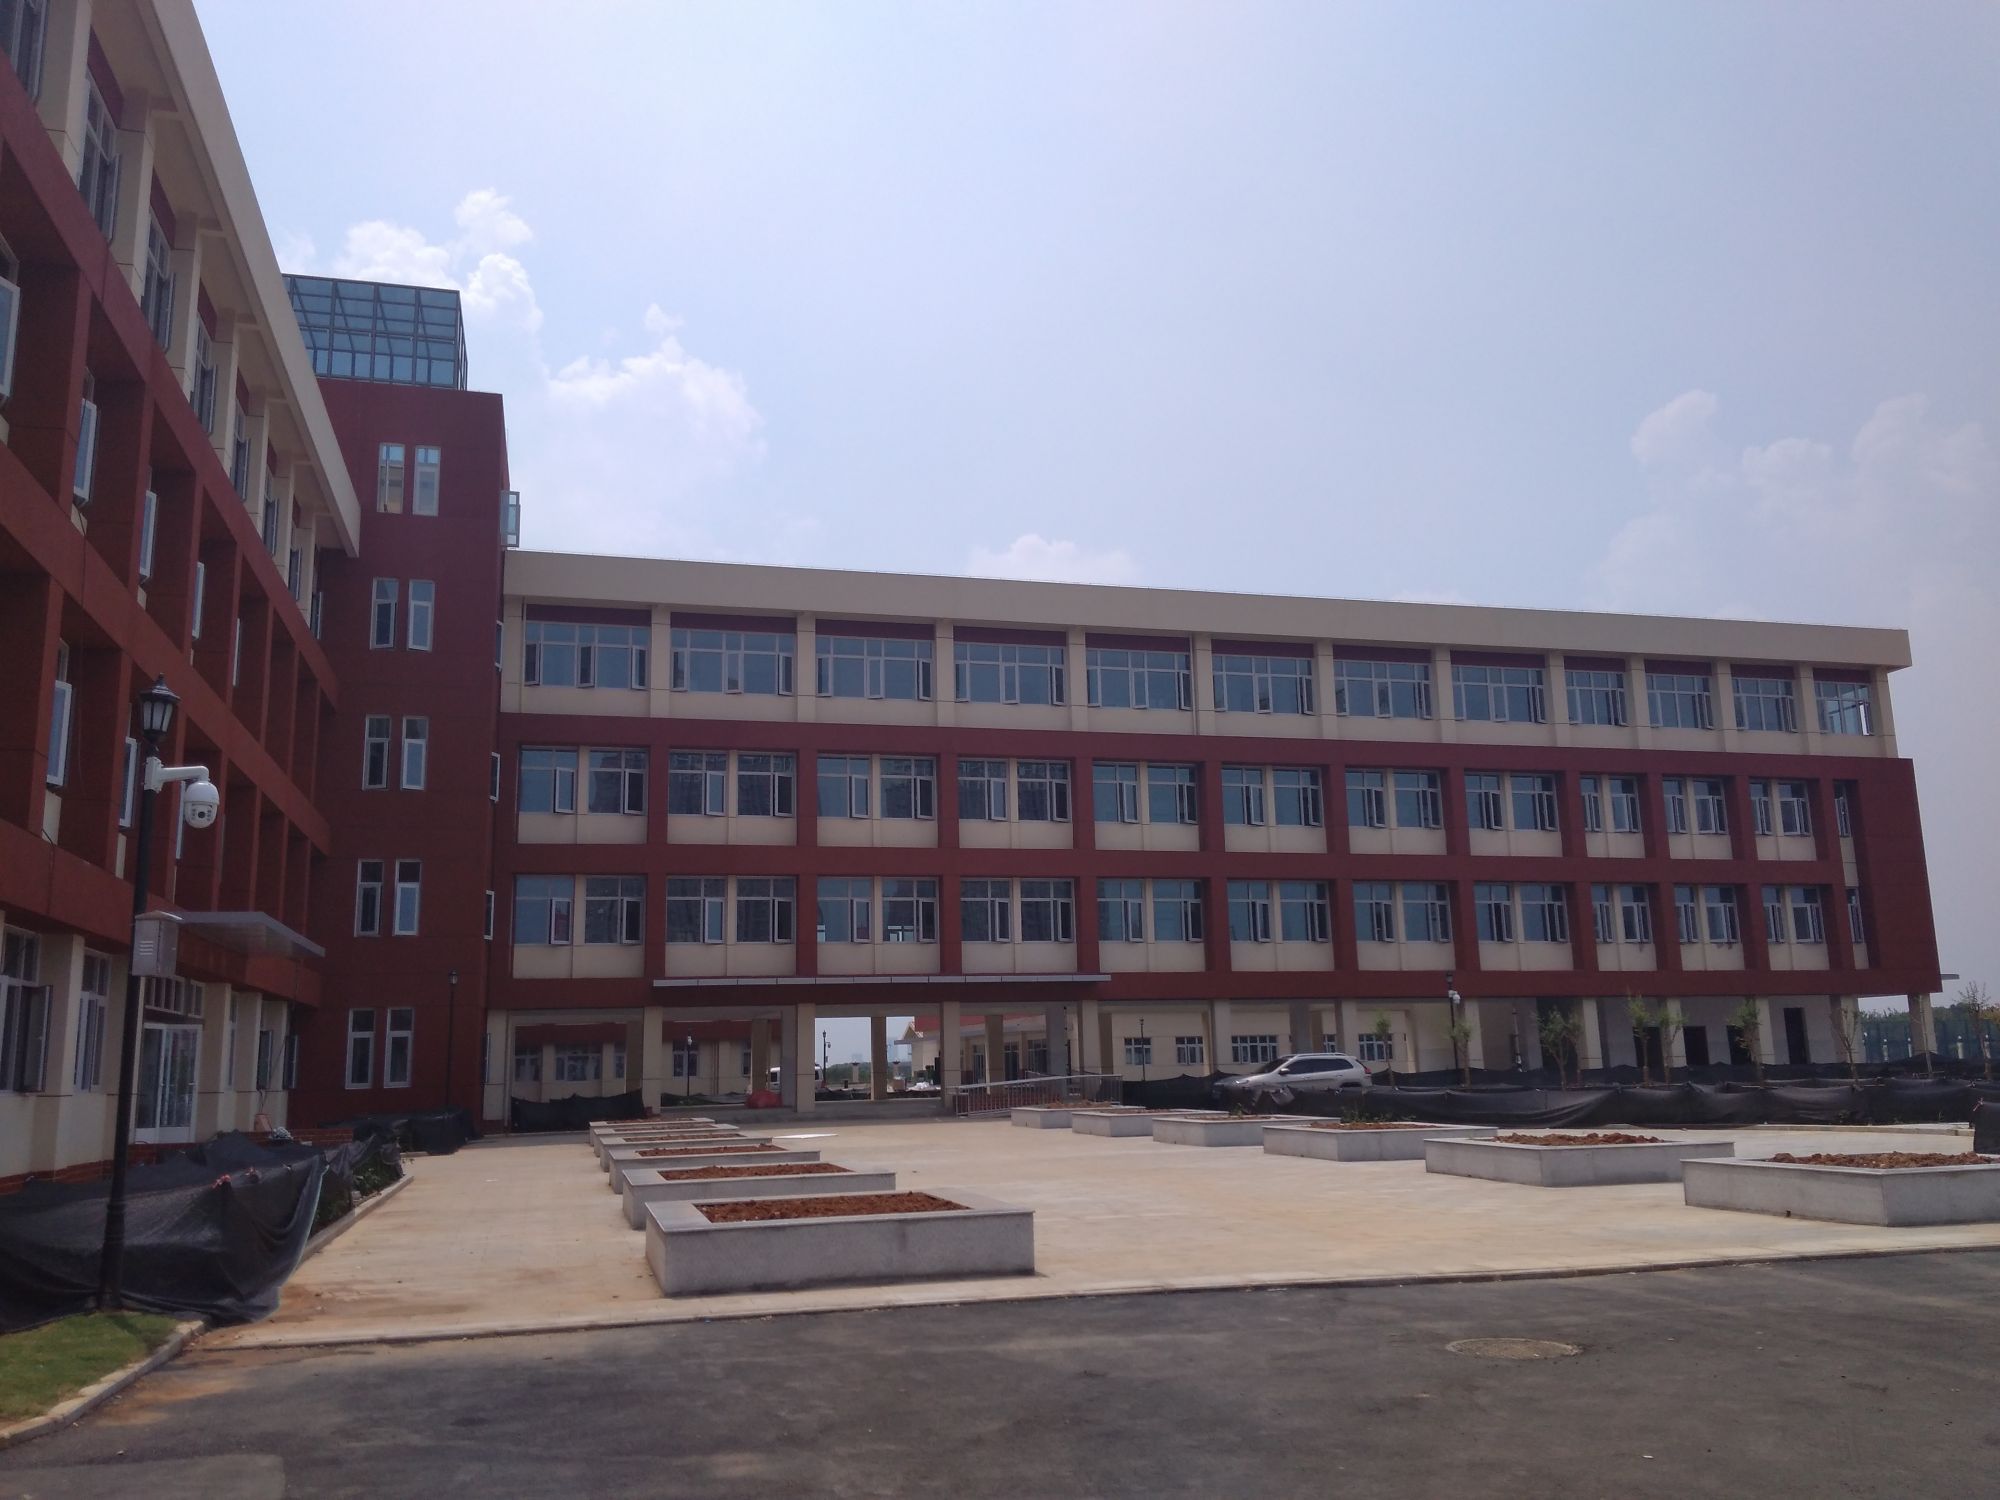 南湖小学位于蔡甸区大集街,邻近武汉经济开发区,目前附近在建楼盘有14